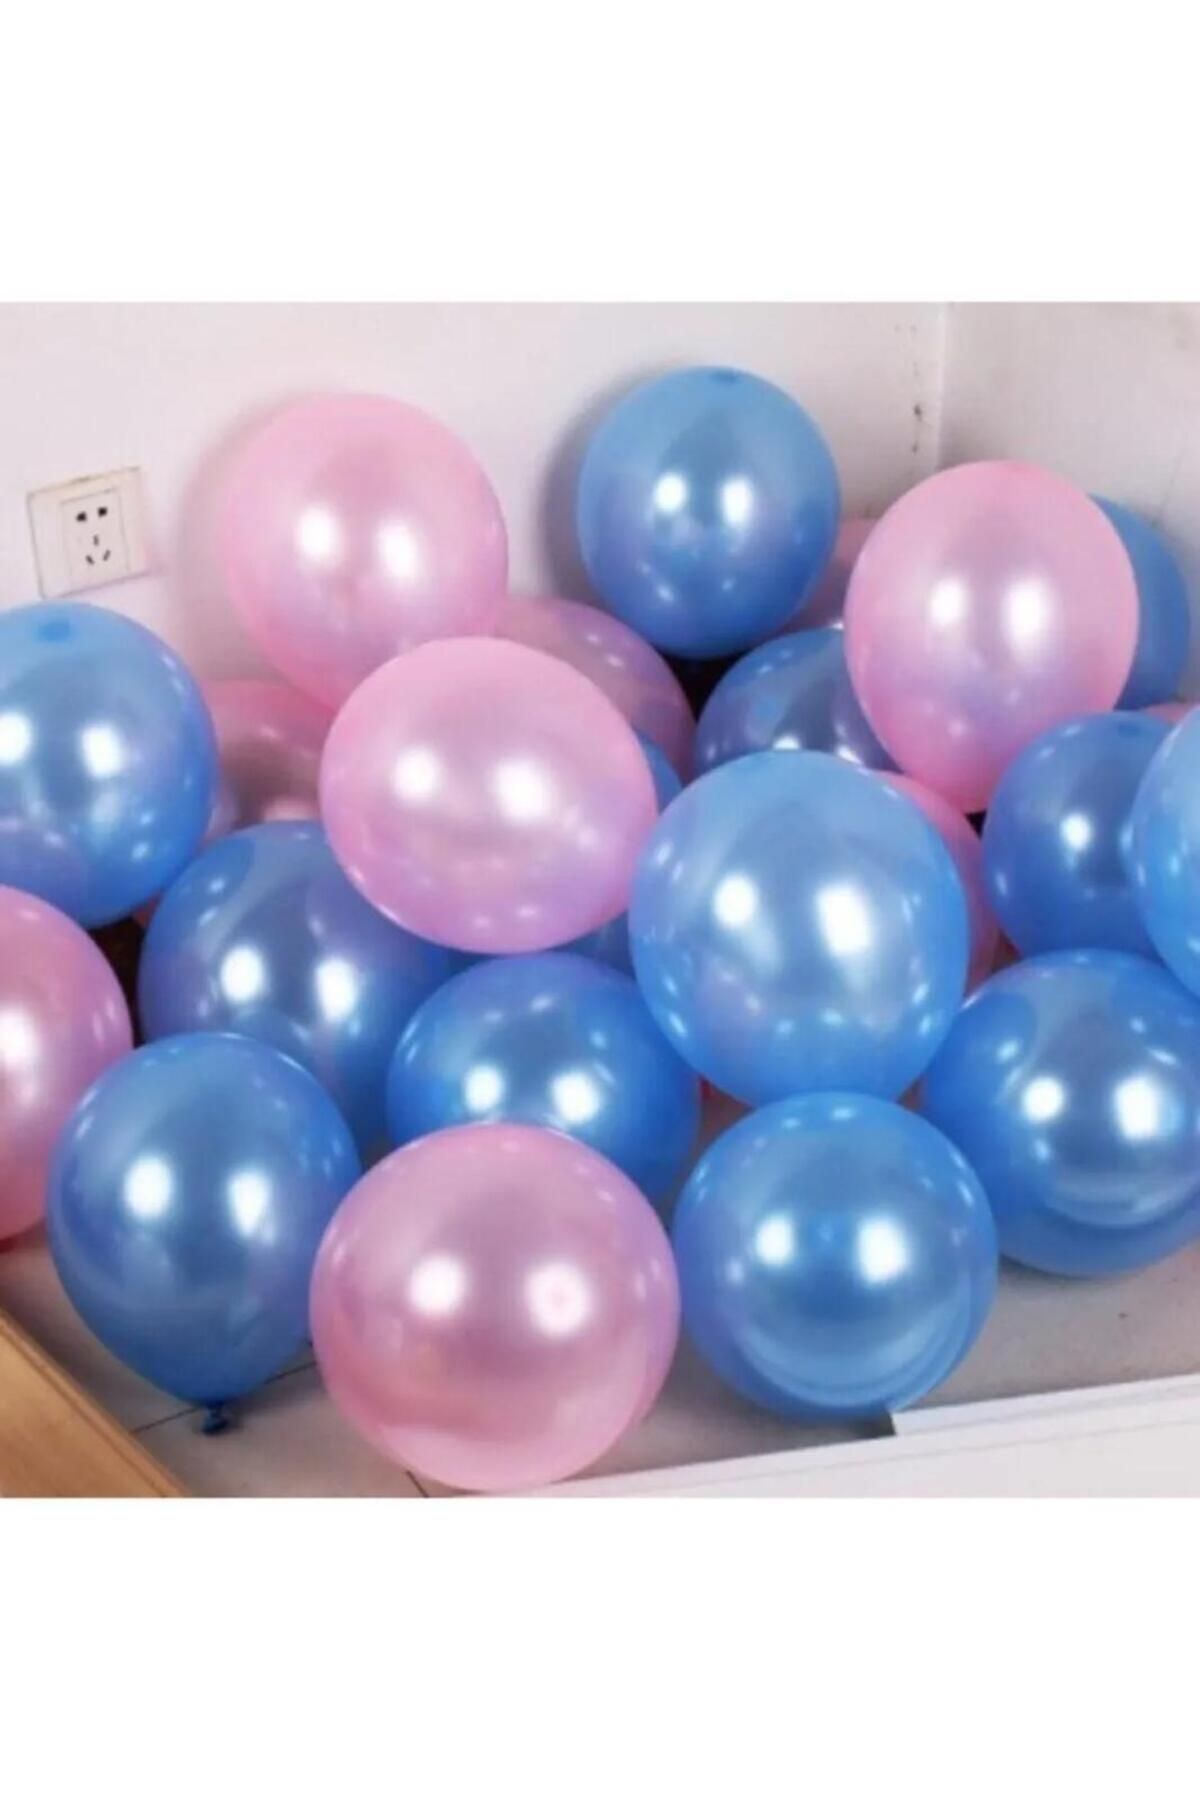 SURPRISE PARTY STORE Cinsiyet Belirleme Partisi Kız Mı Erkek Mi Boy Or Girl Metalik Pembe ve Mavi Balon 10 Adet 30cm